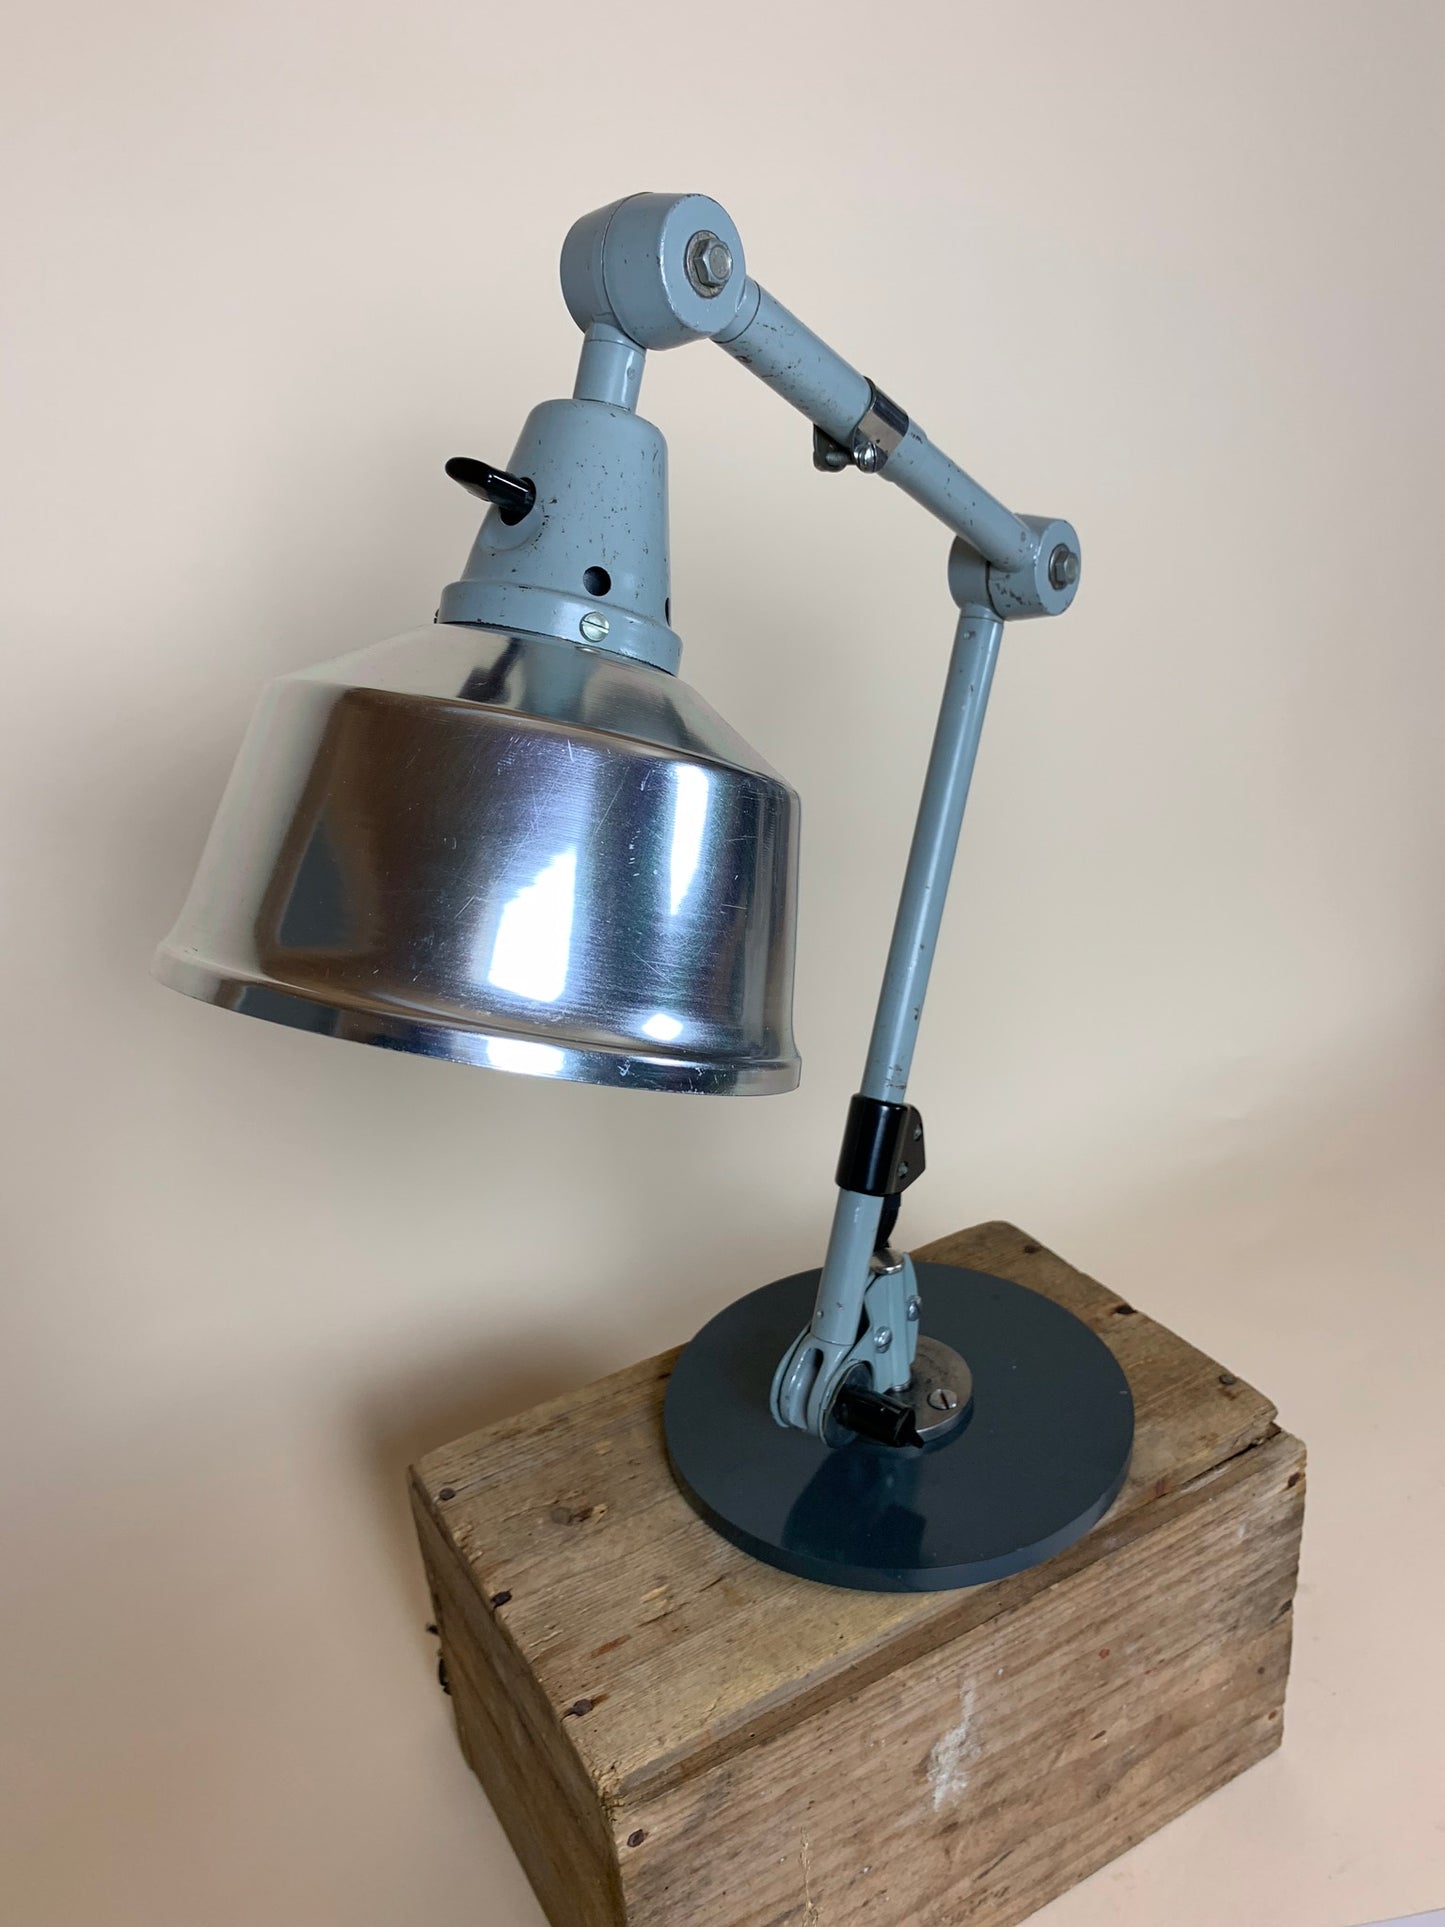 Midgard-Lampe - entworfen von Curt Fischer in den 1920er Jahren